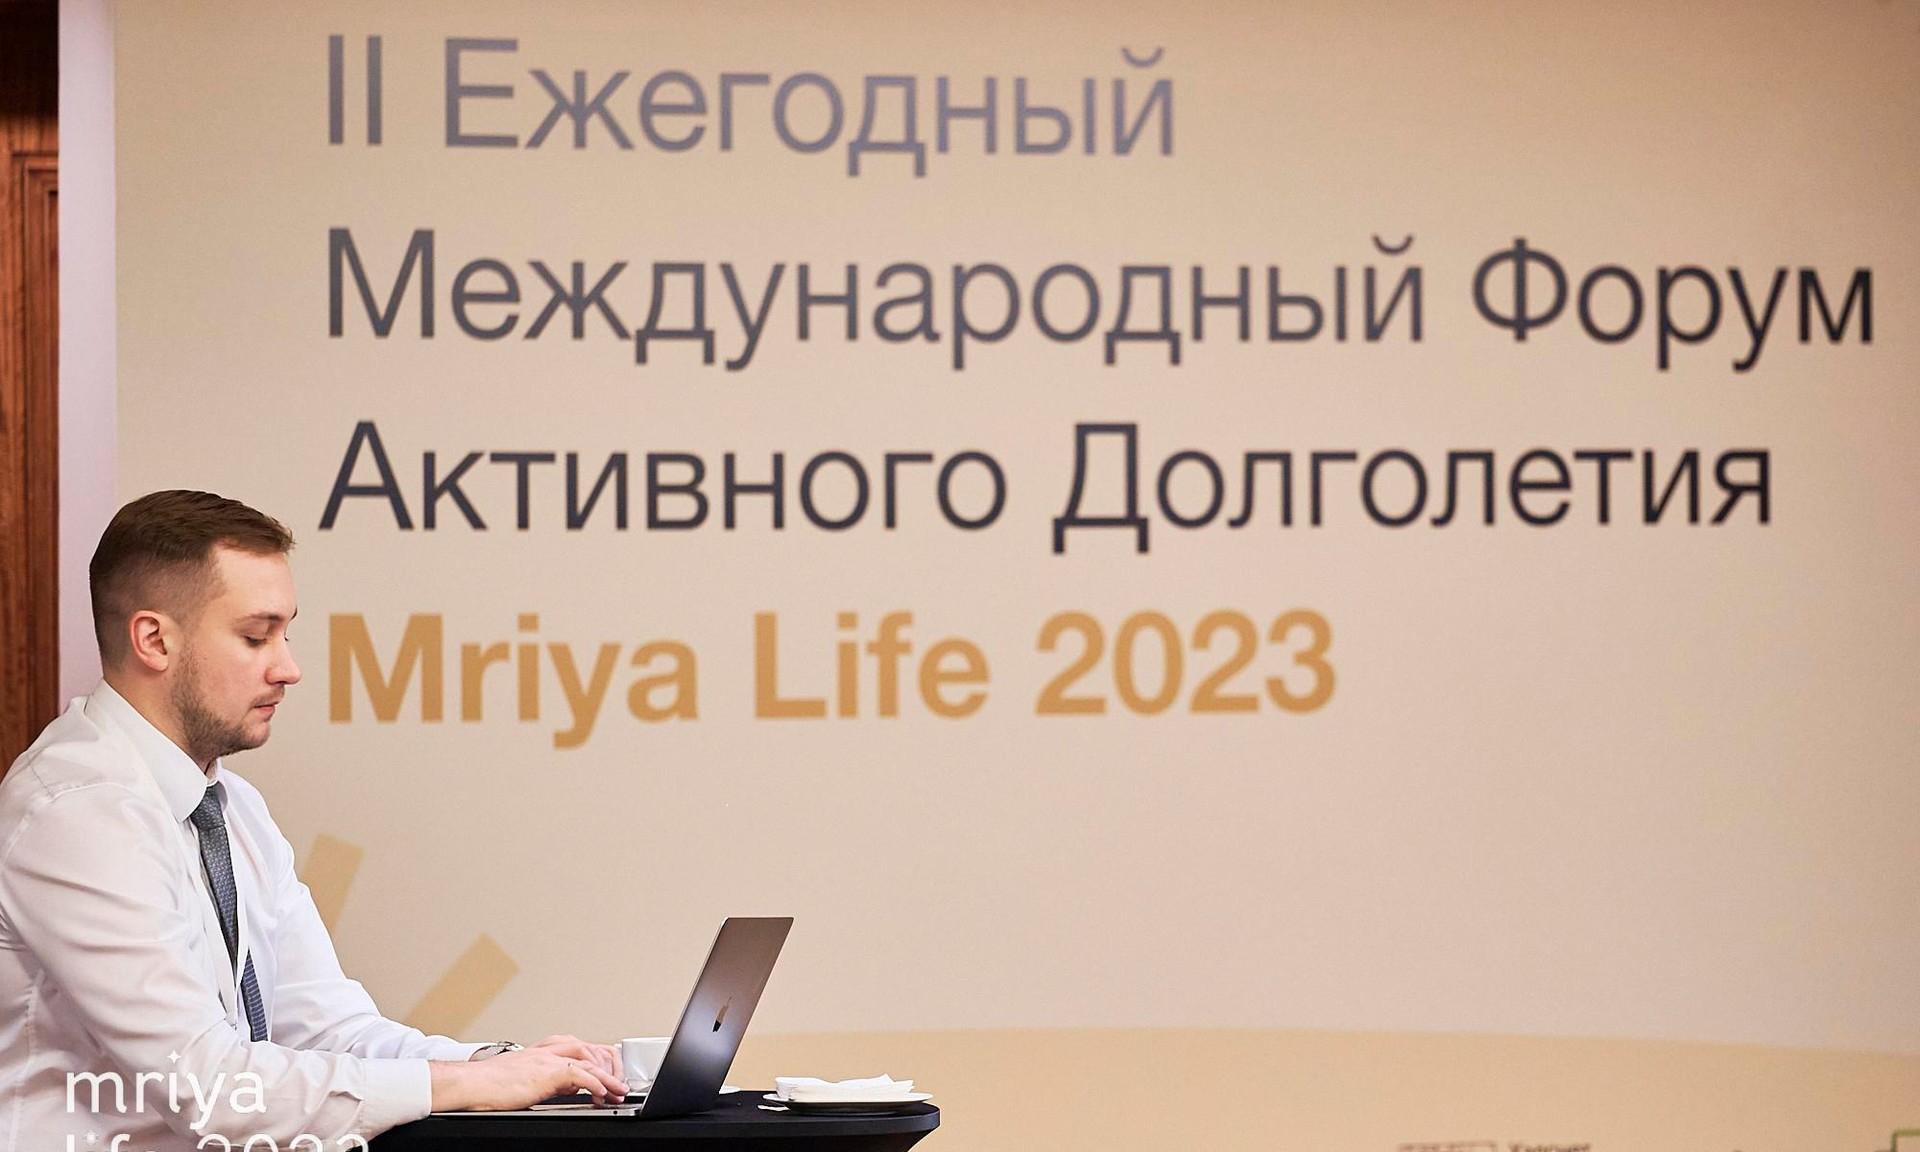 Mriya Life 2023: как прошел международный форум активного долголетия